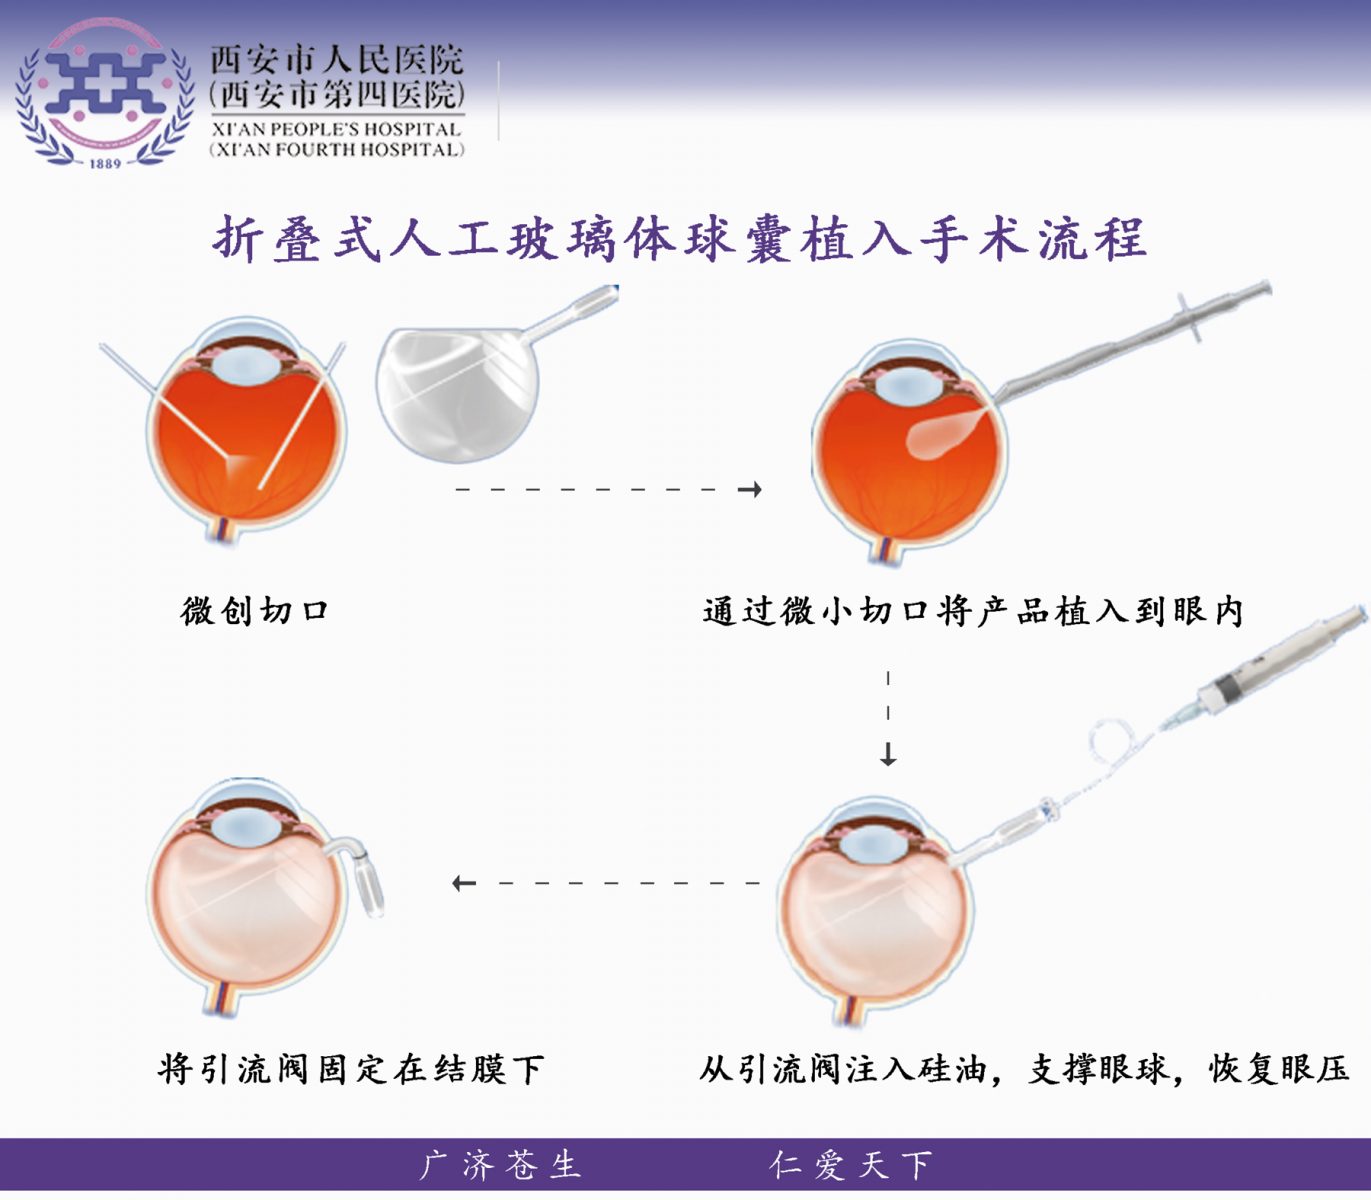 折叠式人工玻璃体球囊 | 广州卫视博生物科技有限公司 - 官网